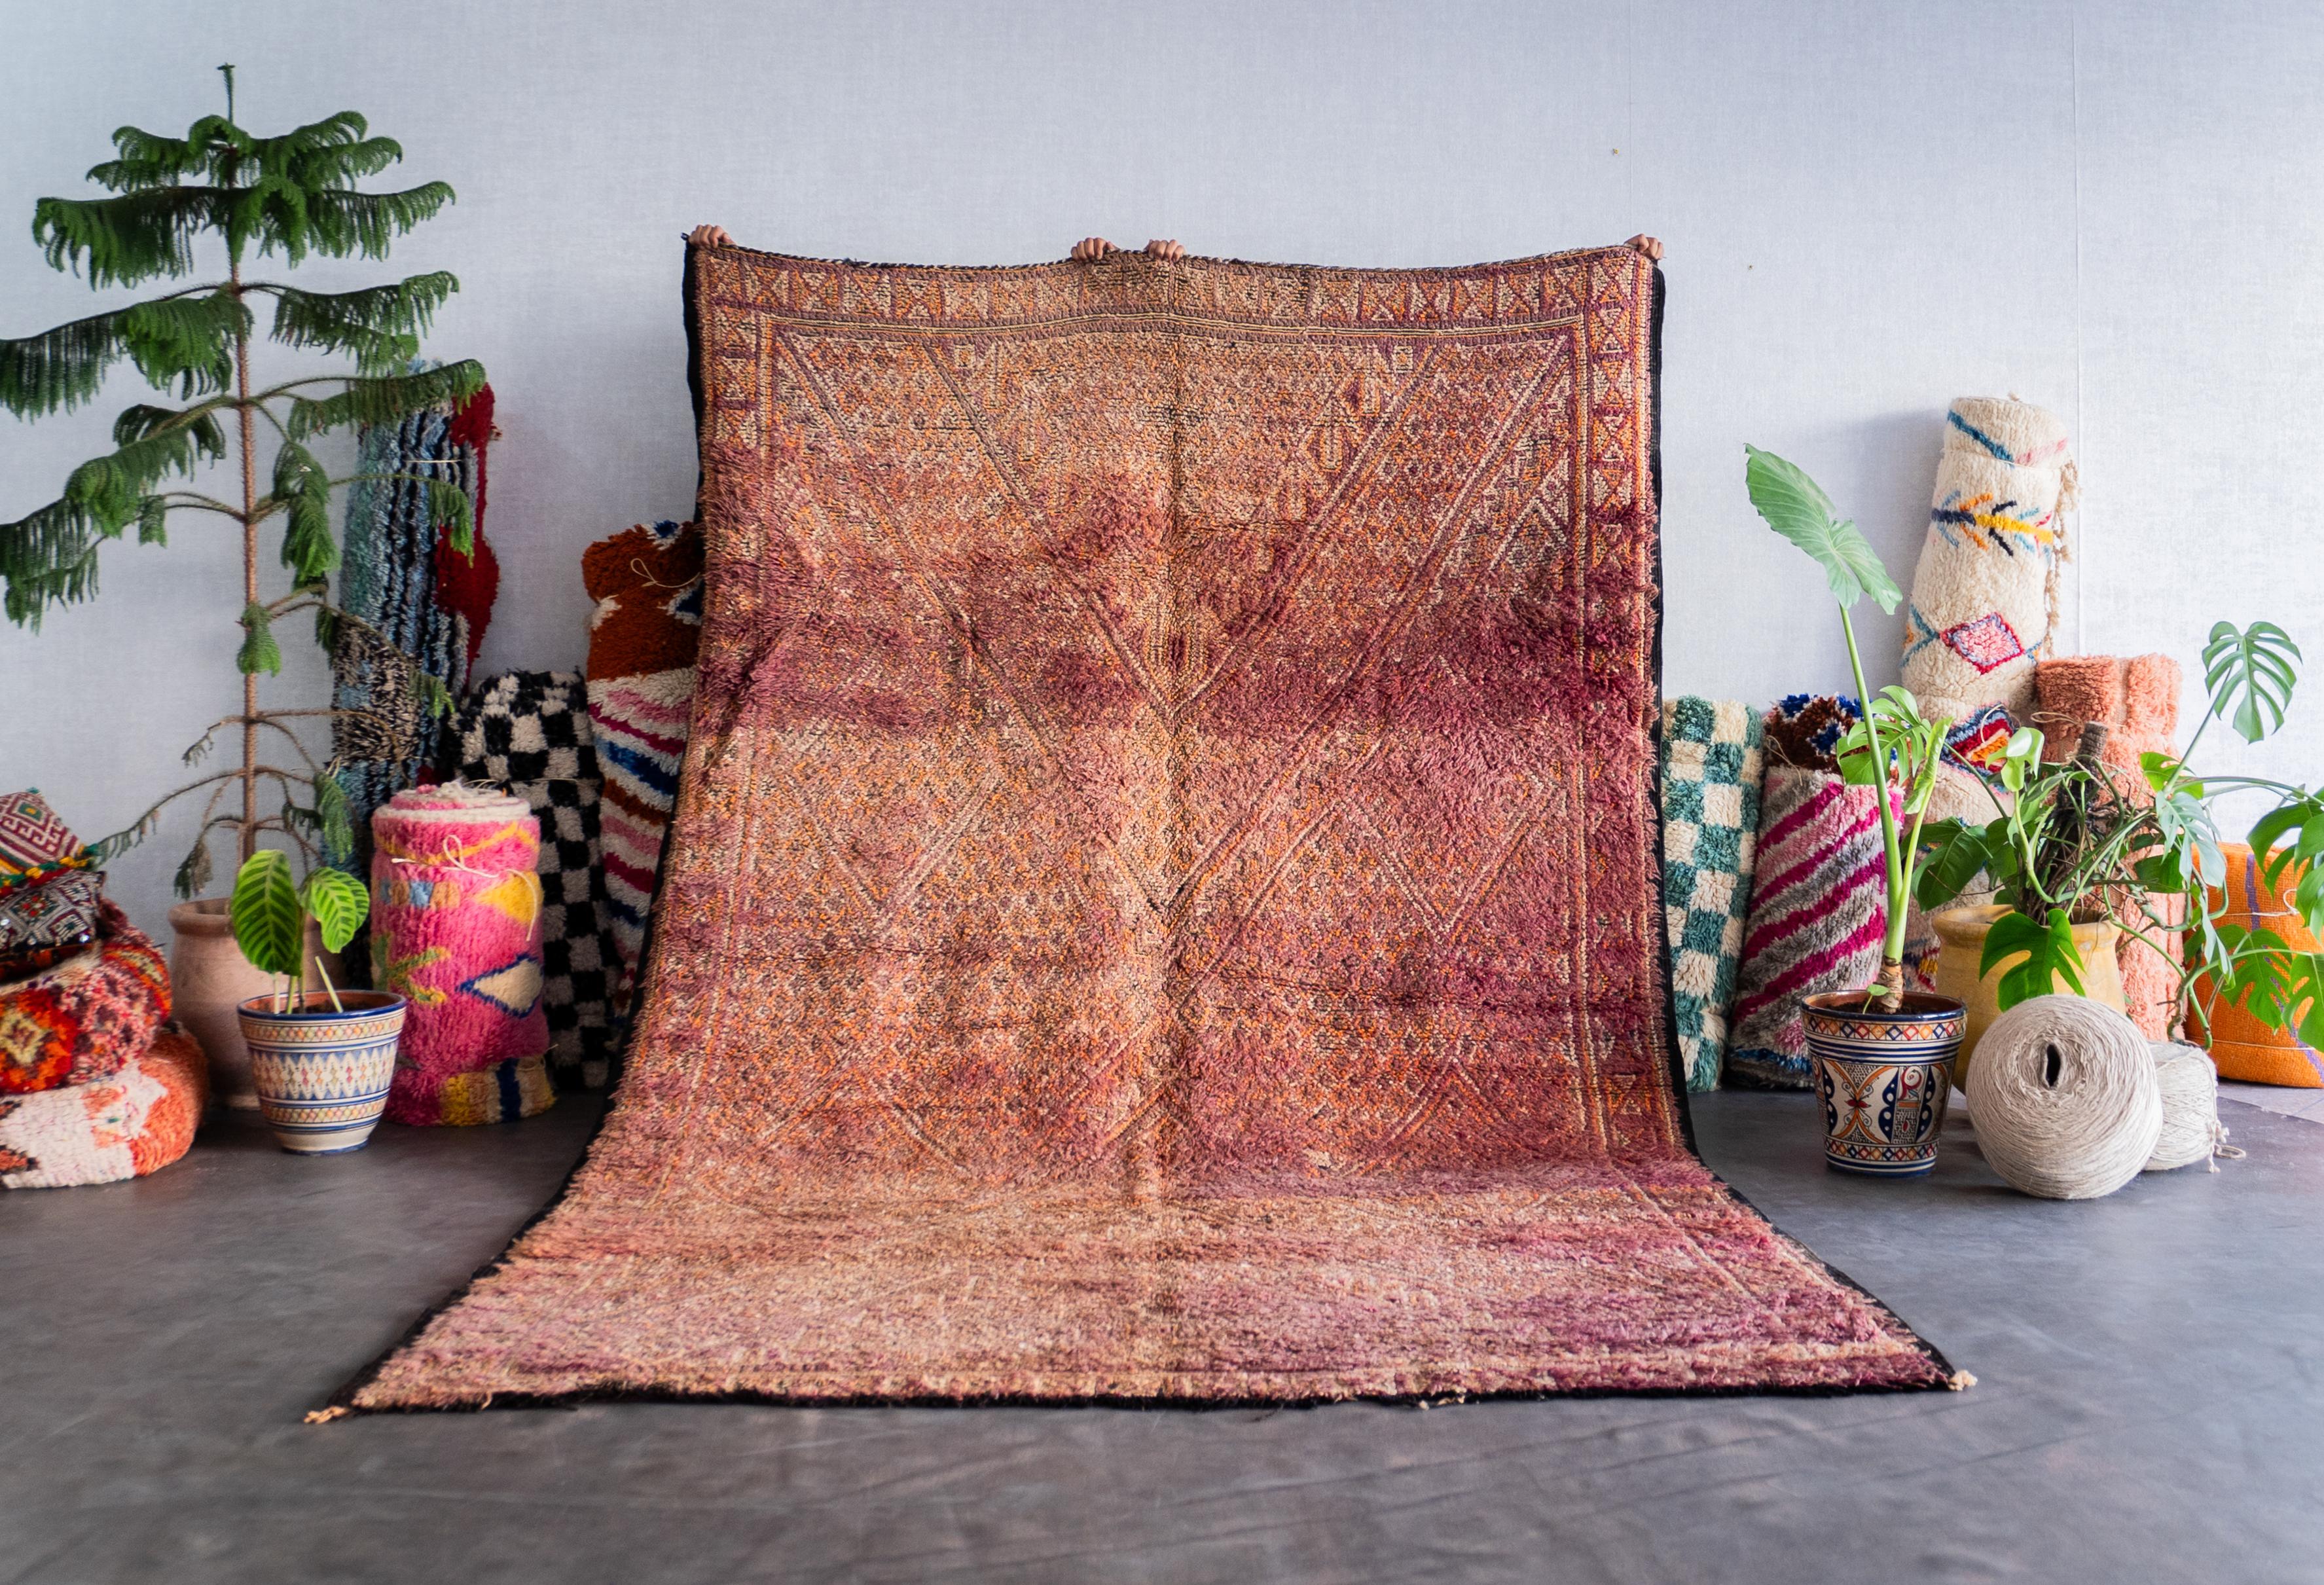 Entdecken Sie das reiche Erbe, das in unseren lila marokkanischen Vintage-Teppich eingewoben ist. Jeder Berberteppich wird von erfahrenen Kunsthandwerkern mit bewährten Techniken handgefertigt und ist ein einzigartiges Zeugnis der marokkanischen